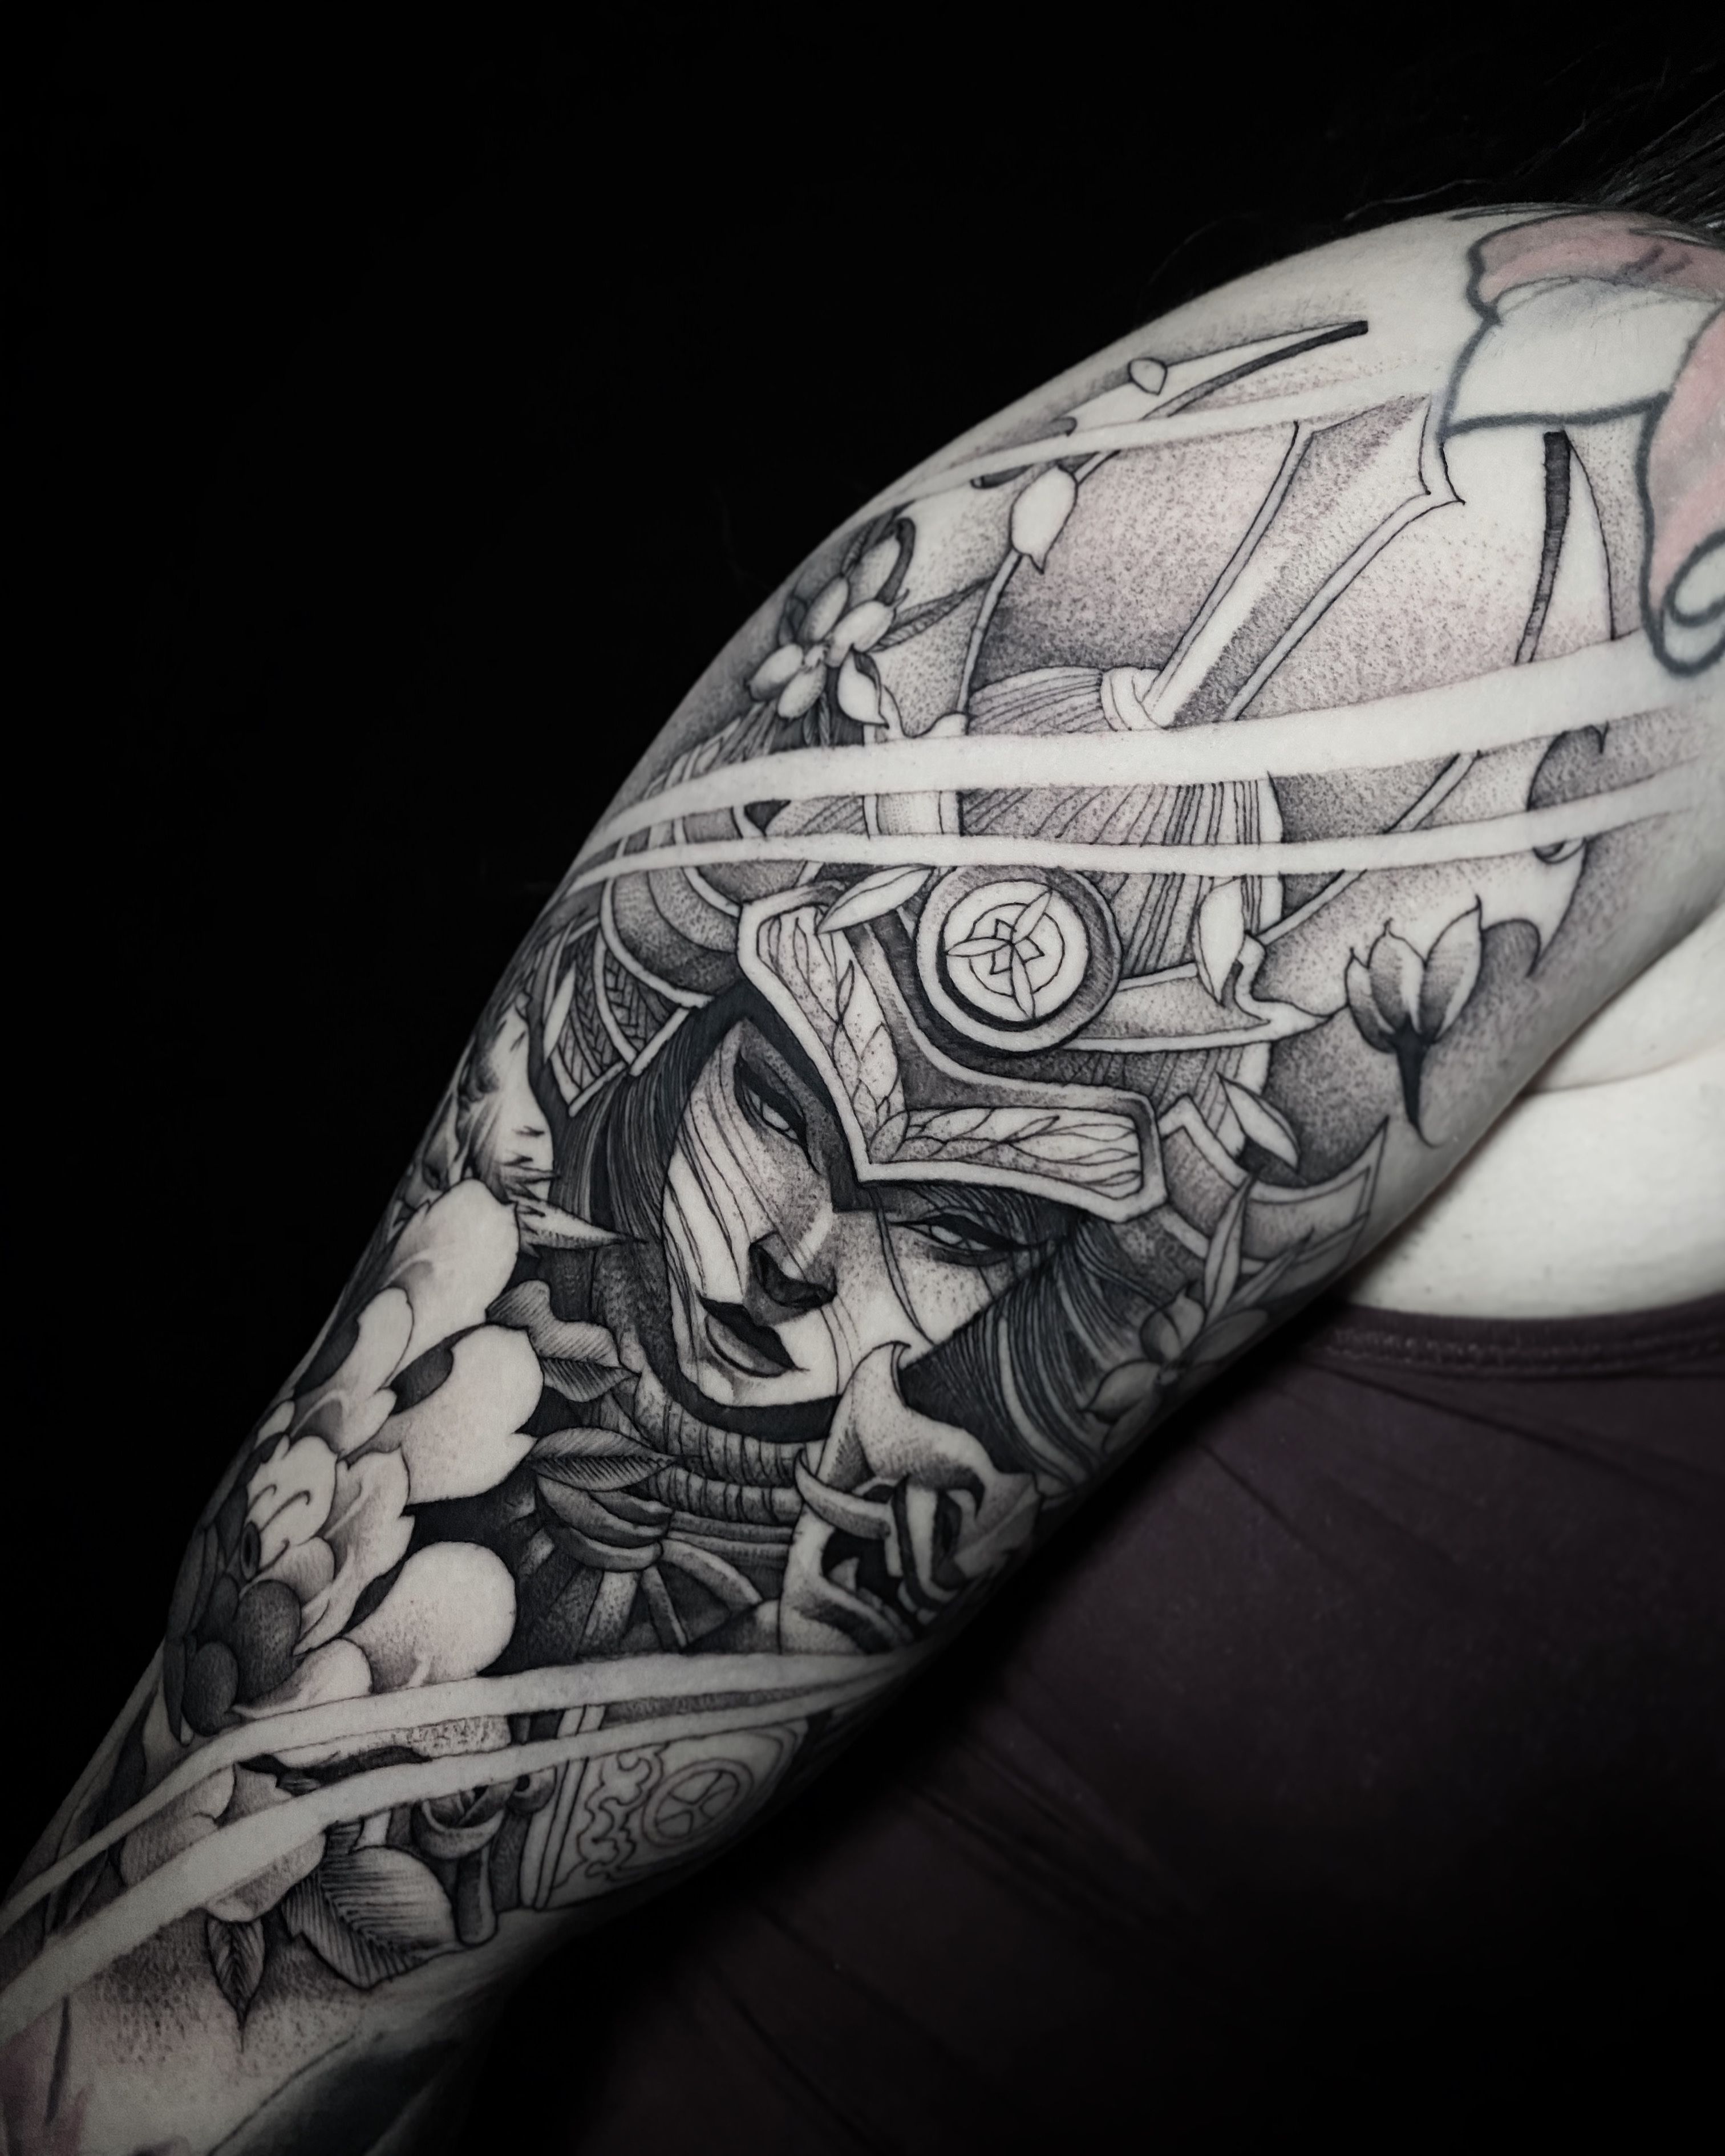 The samurai tattoo: inked by the katana